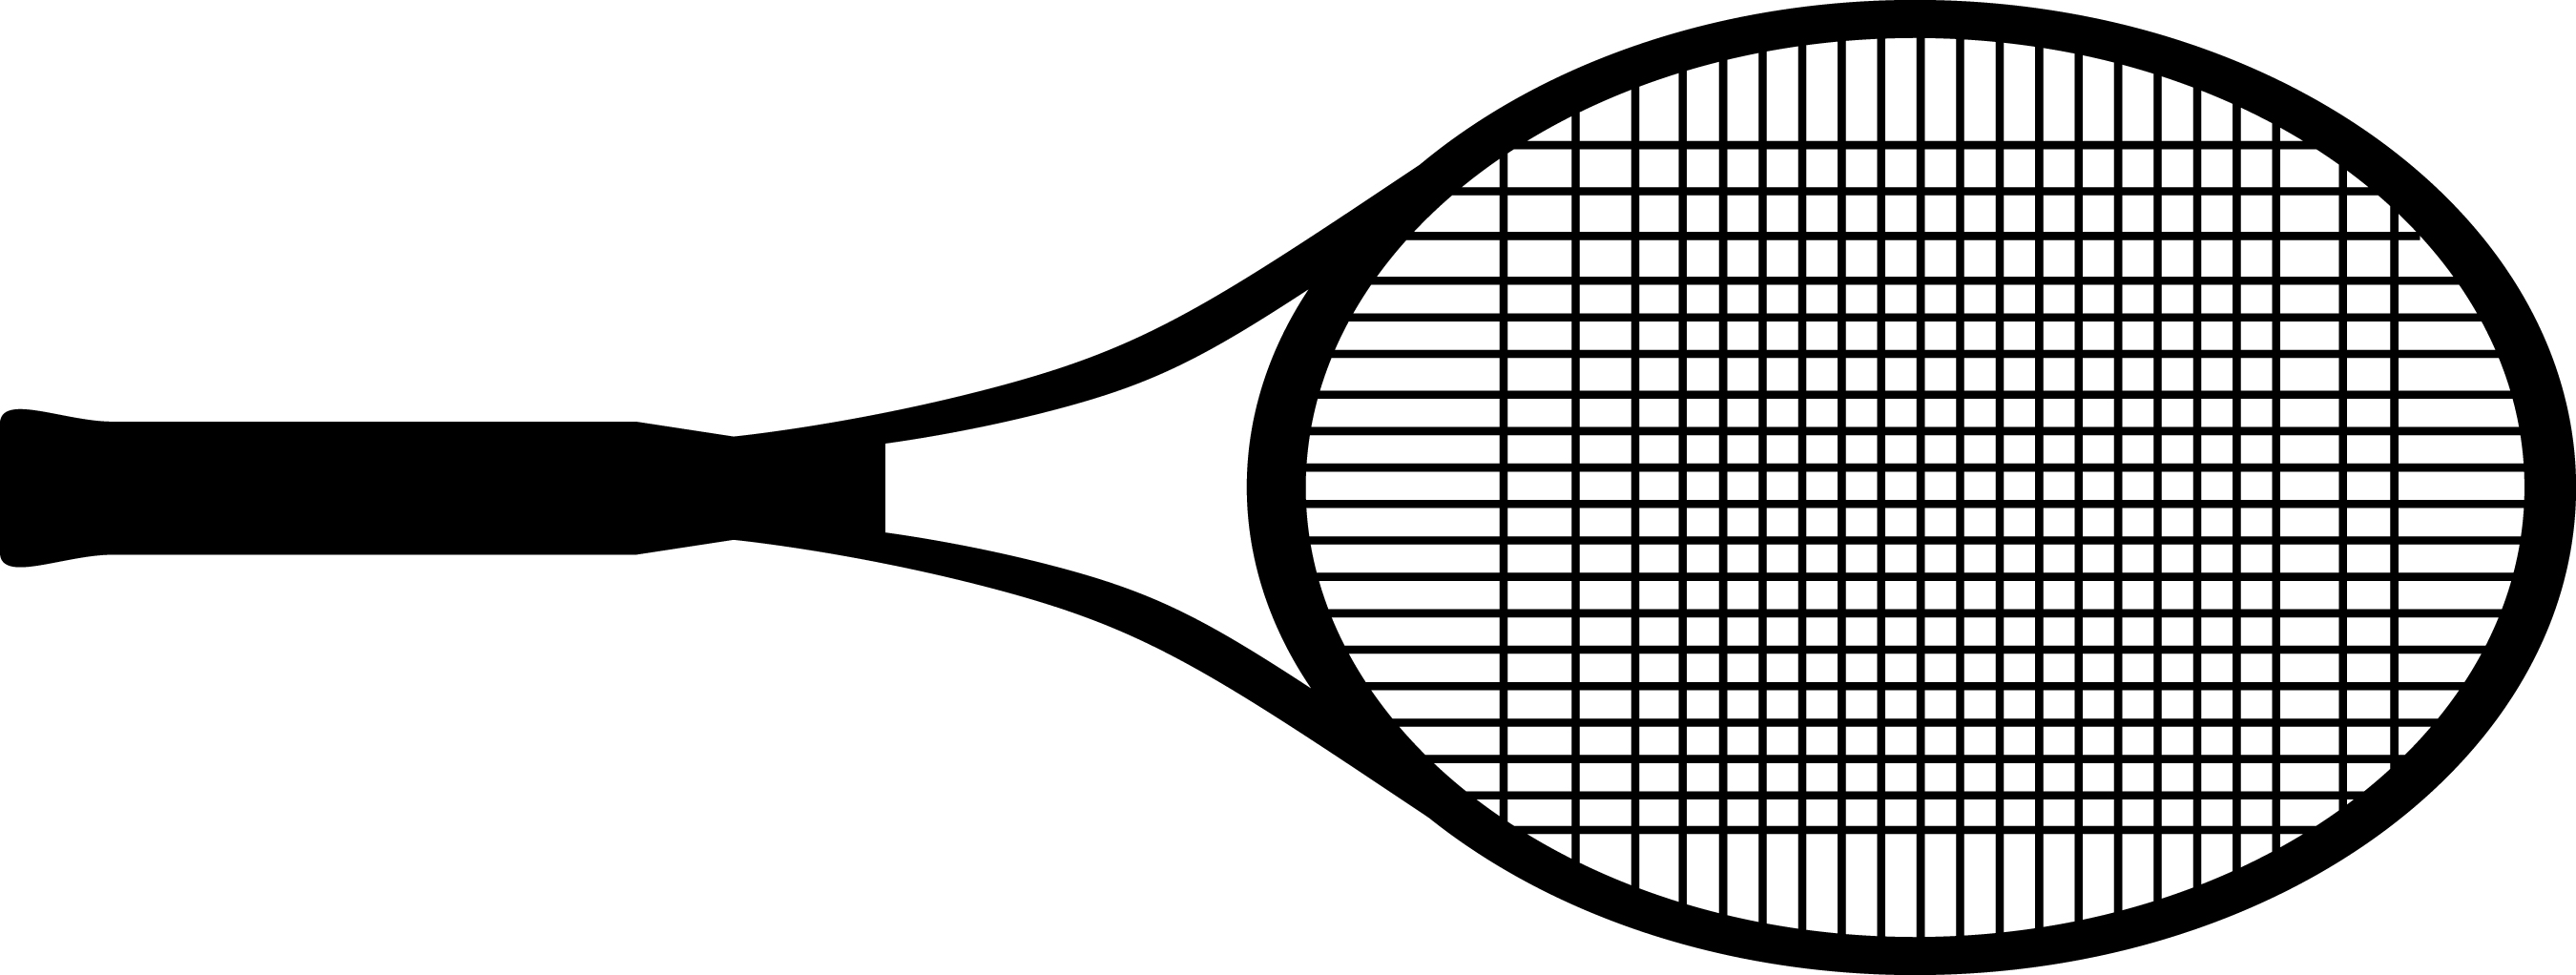 Pink Tennis Racket Clipart Cl